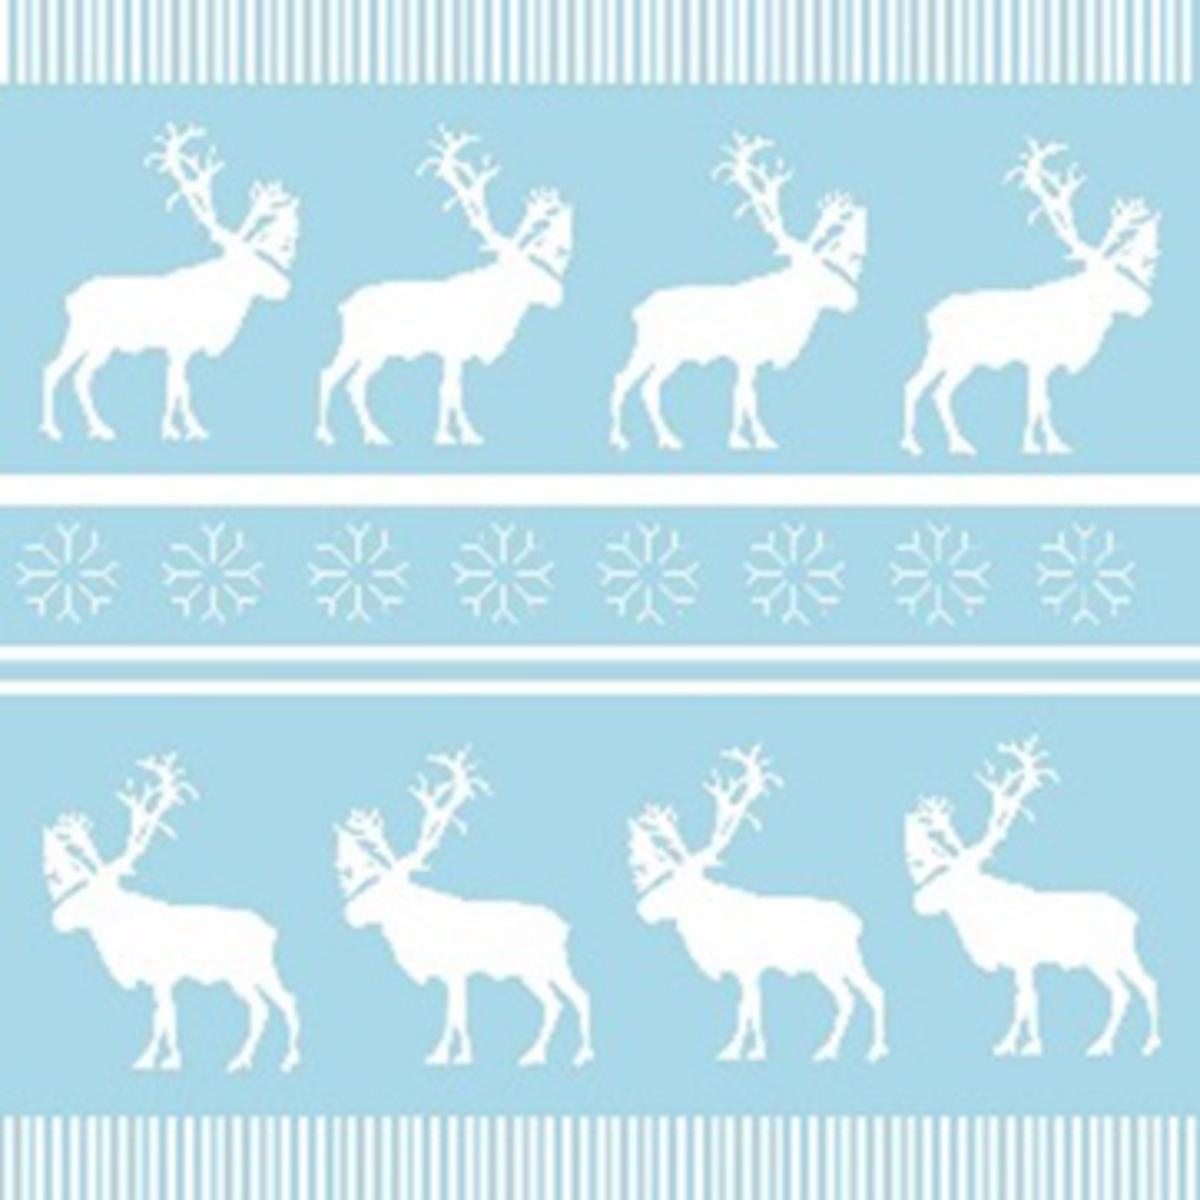 Lot de 20 serviettes imprimées caribou - Papier - 33 x 33 cm - Blanc et bleu